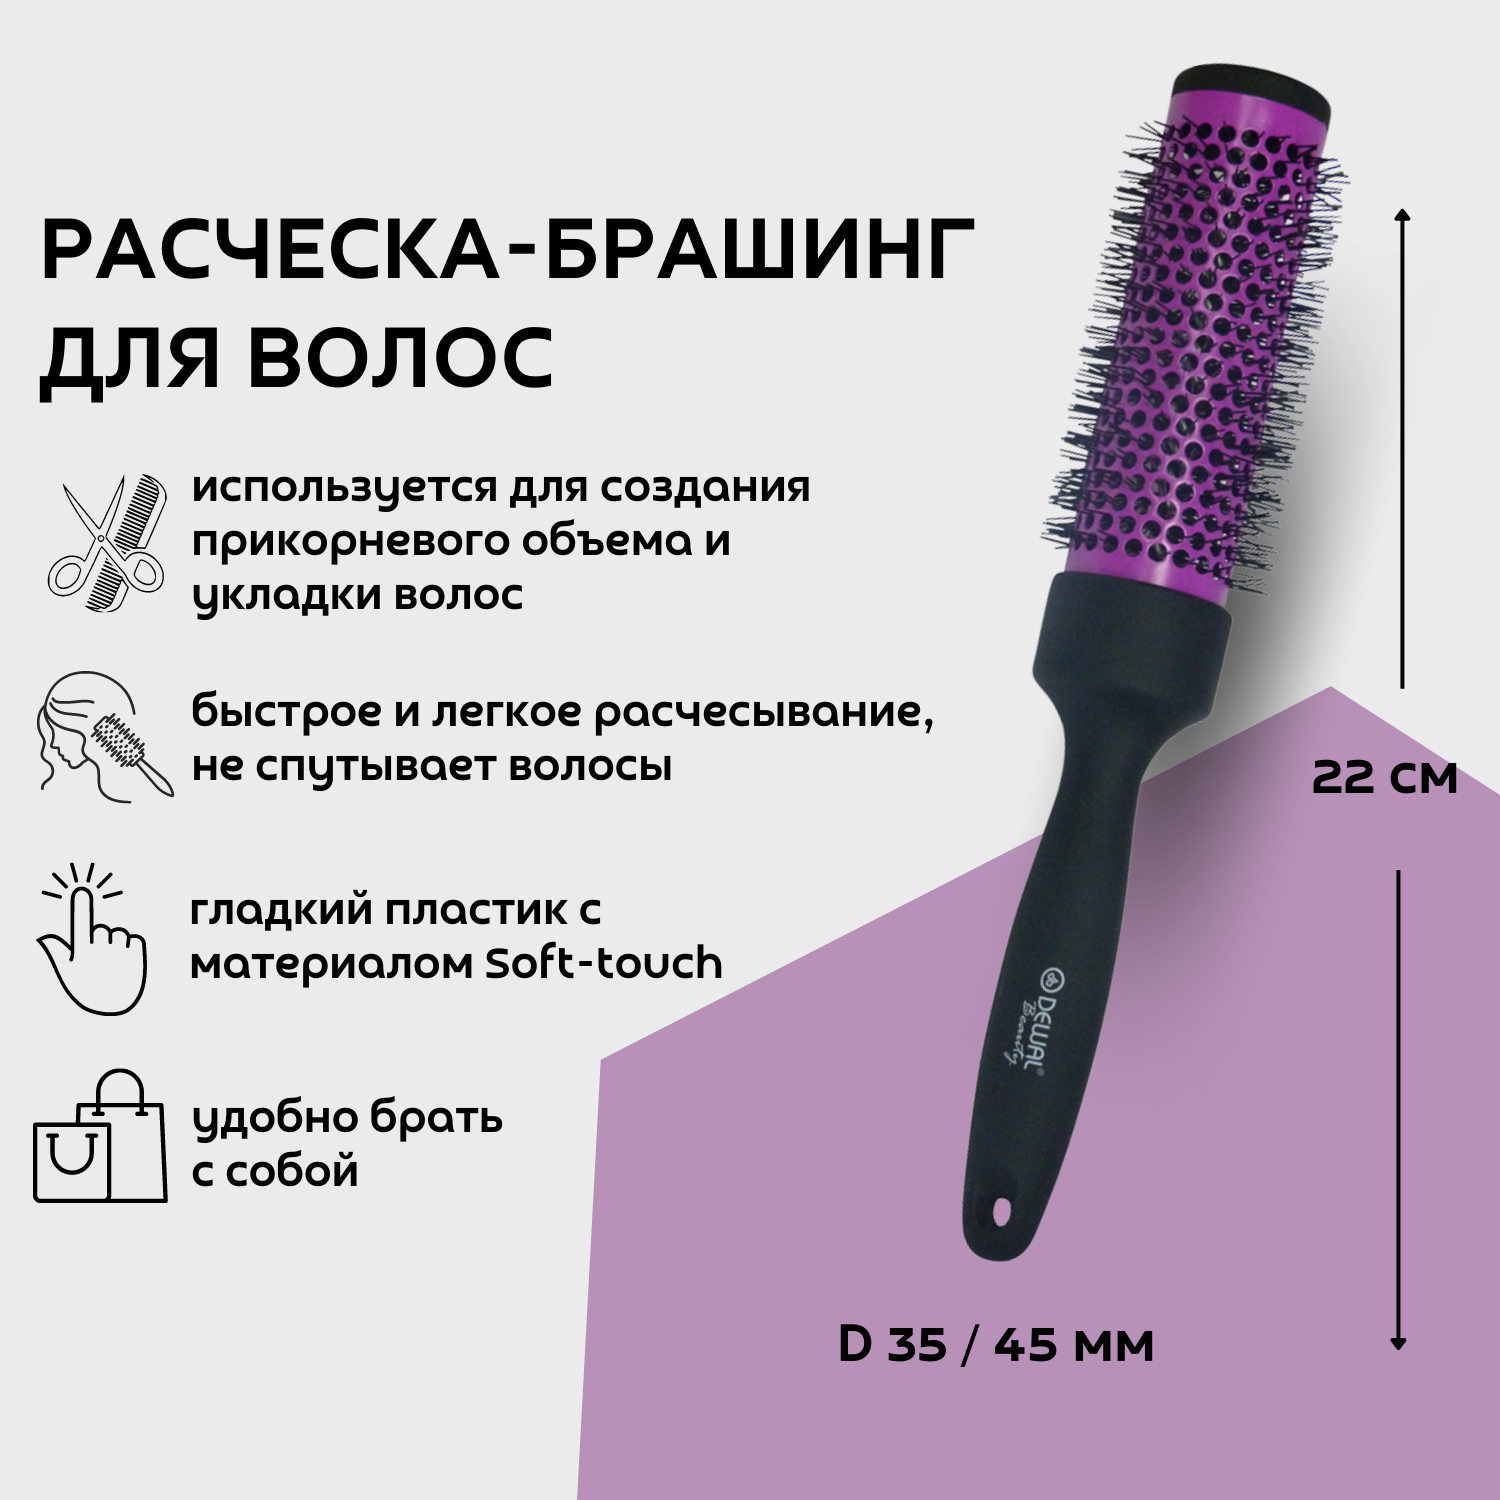 Dewal Beauty Брашинг с покрытием Soft touch, D 35 / 45 мм, 22 см, пластик, цвет черный-фиолетовый (DBBR35)